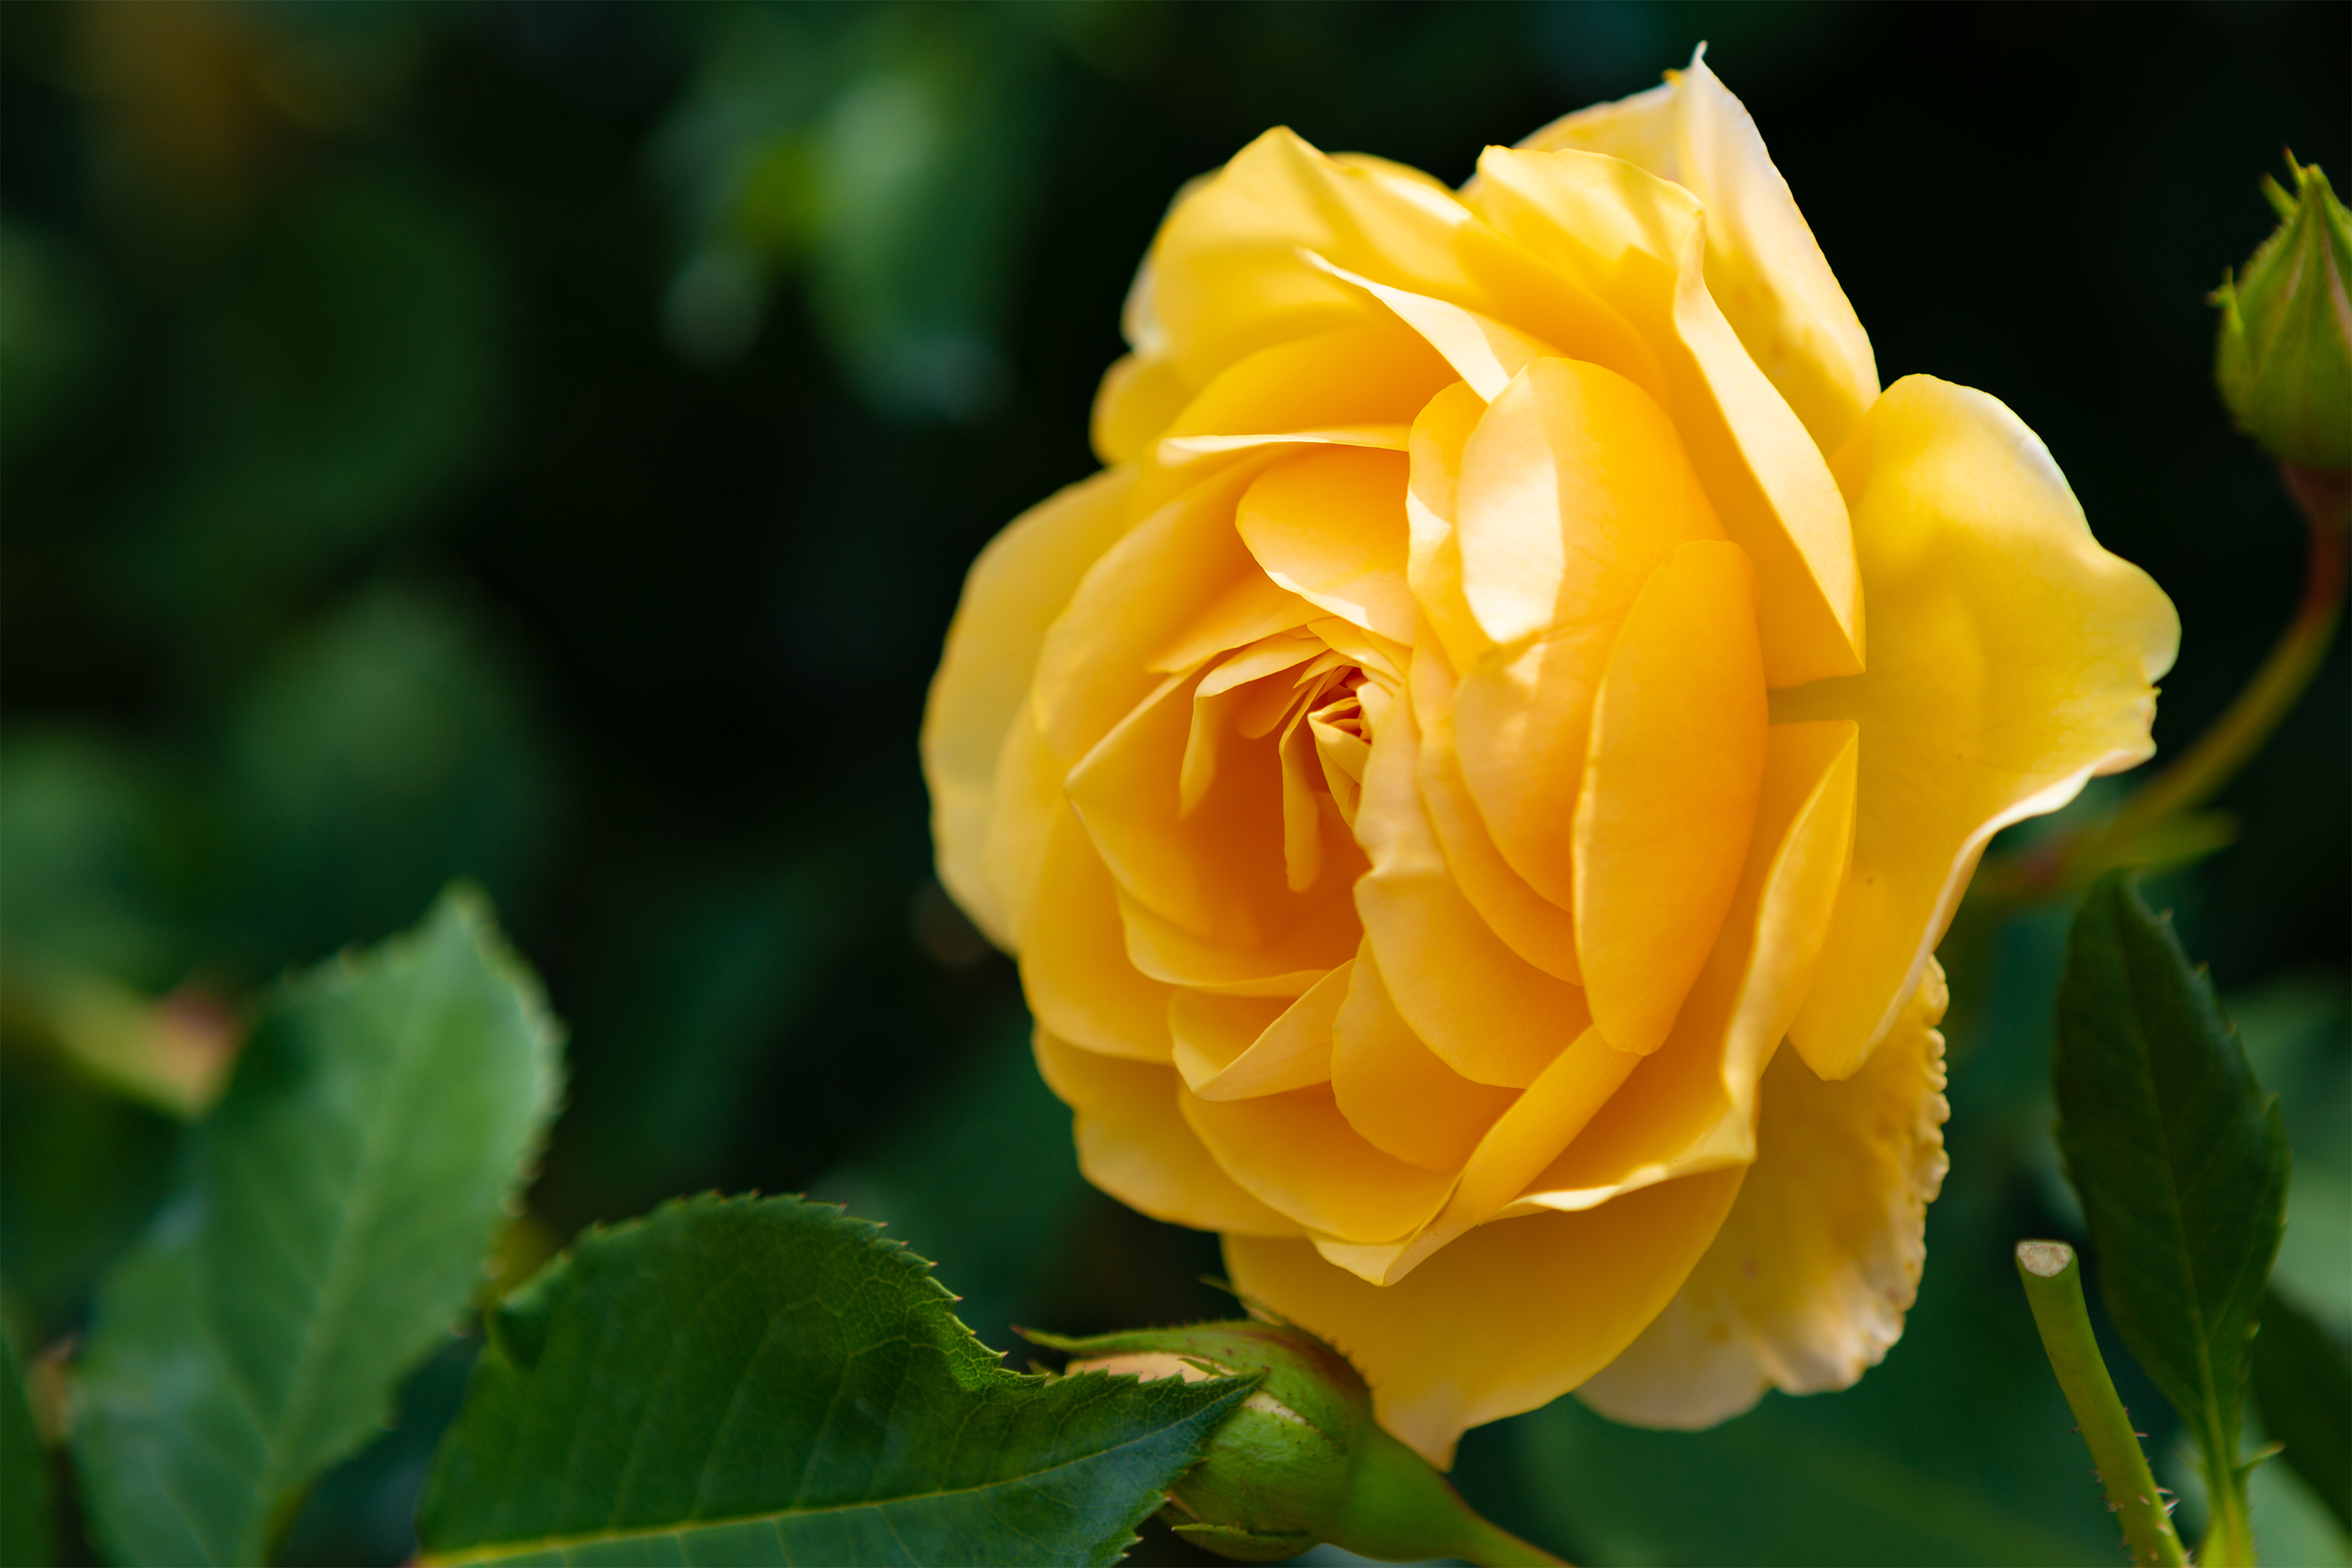 黄色いバラ 薔薇 03 無料の高画質フリー写真素材 イメージズラボ